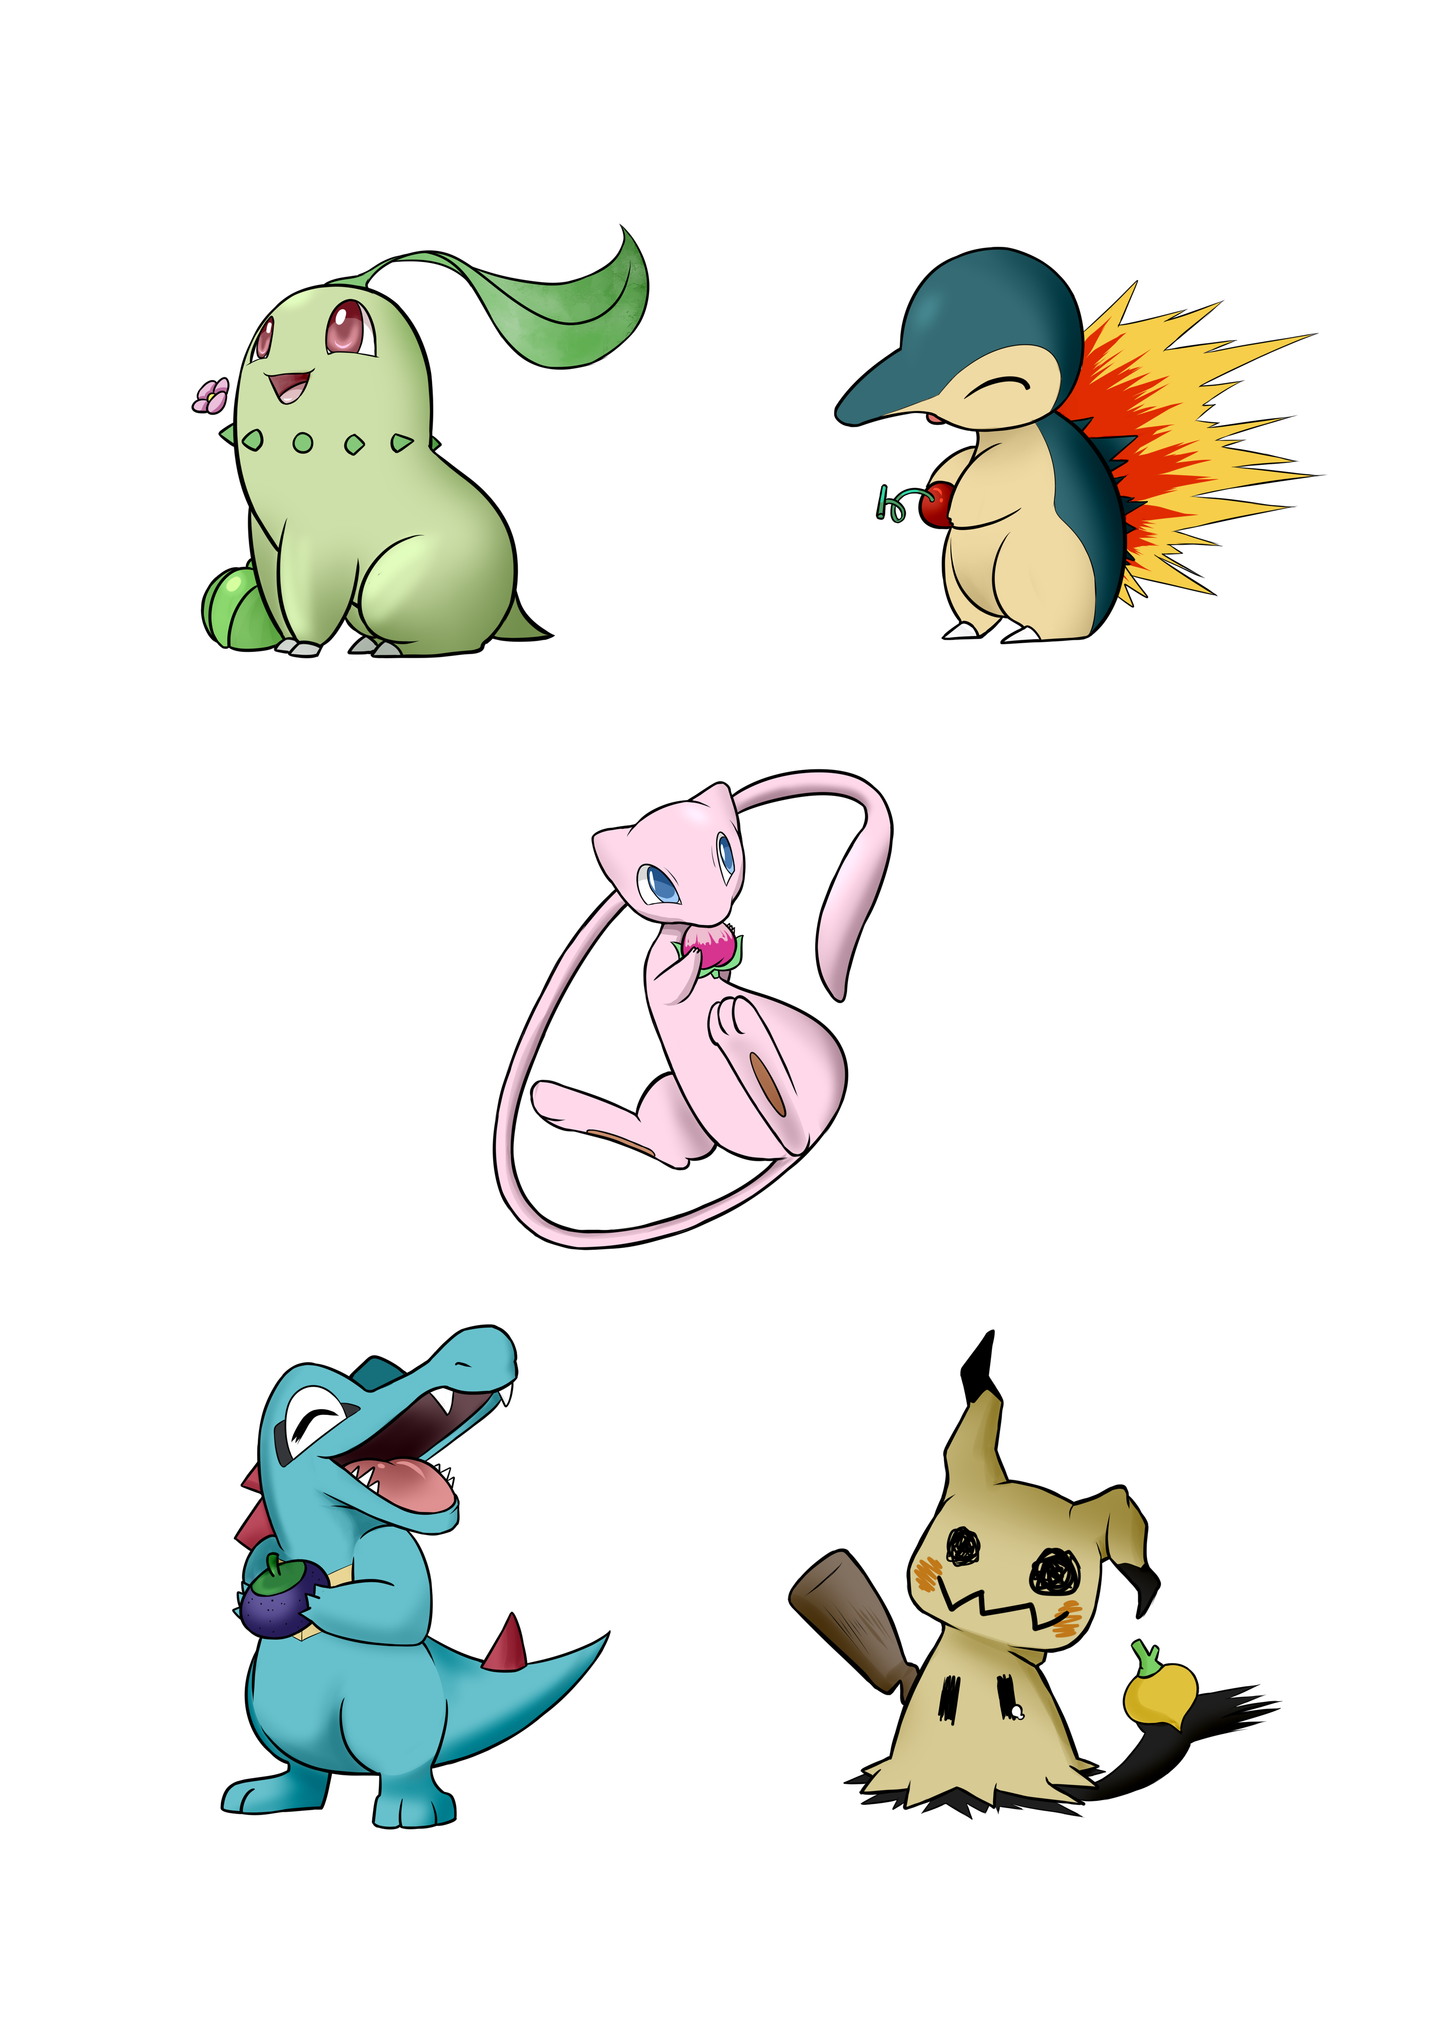 Σετ αυτοκόλλητων Pokemon starters Gen 2 με Mimikyu και Mew